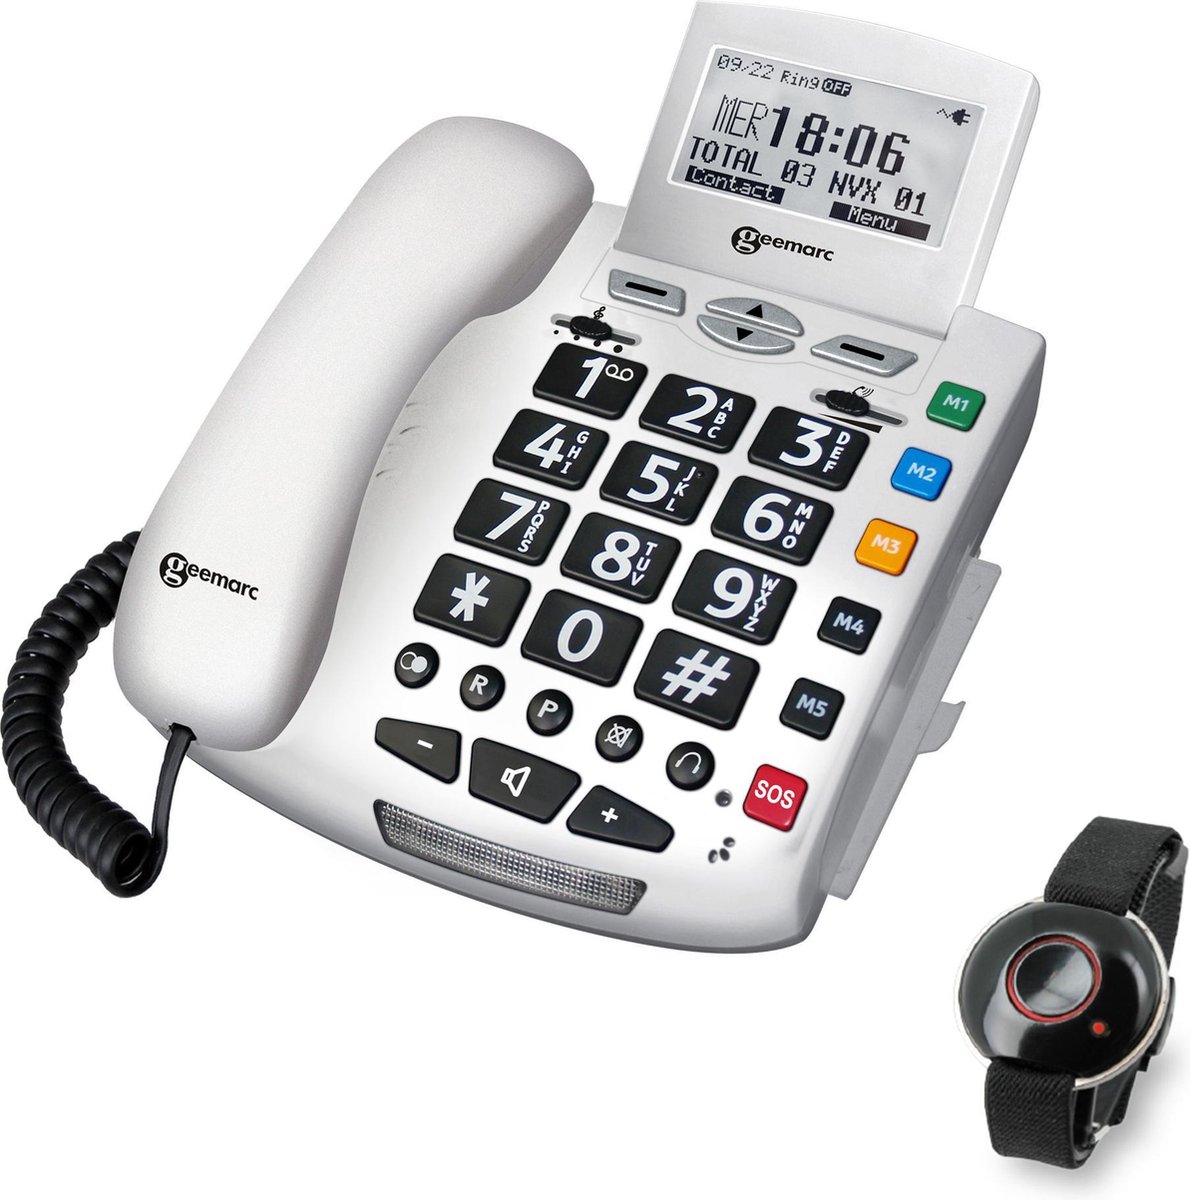 GEEMARC SERENITIES telefoon met draagbare VAL-DETECTOR (Man-Down). Met nummerweergave en 30 dB GELUIDSVERSTERKING geschikt voor SLECHTHORENDEN en SLECHTZIENDEN